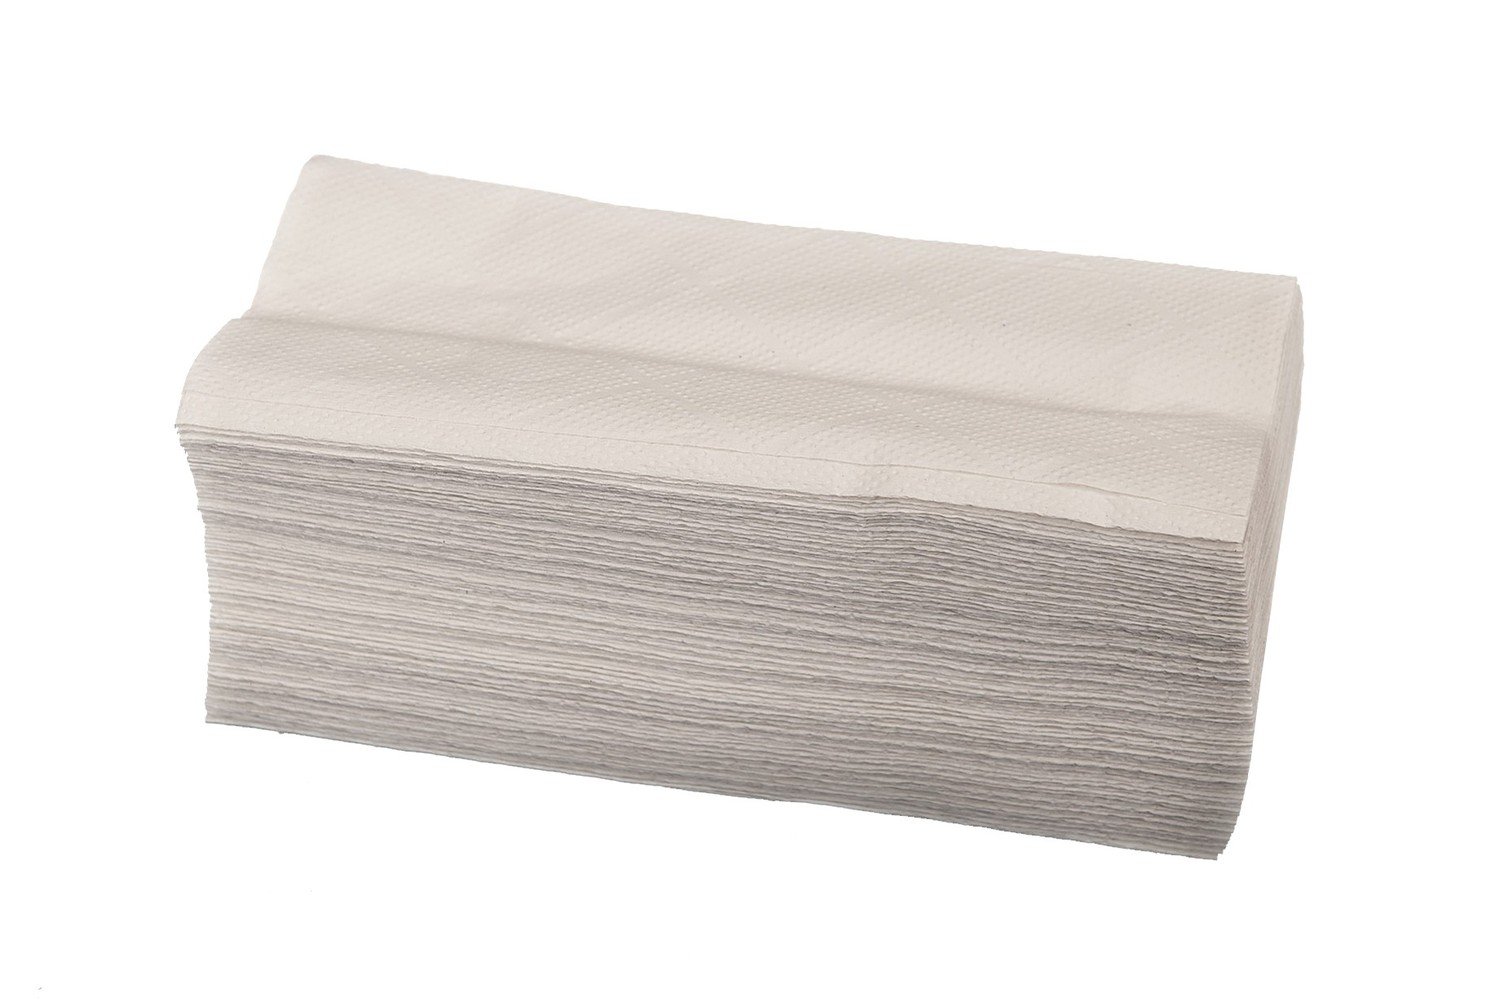 Papírový ručník Zz skládací bílý 1 kus